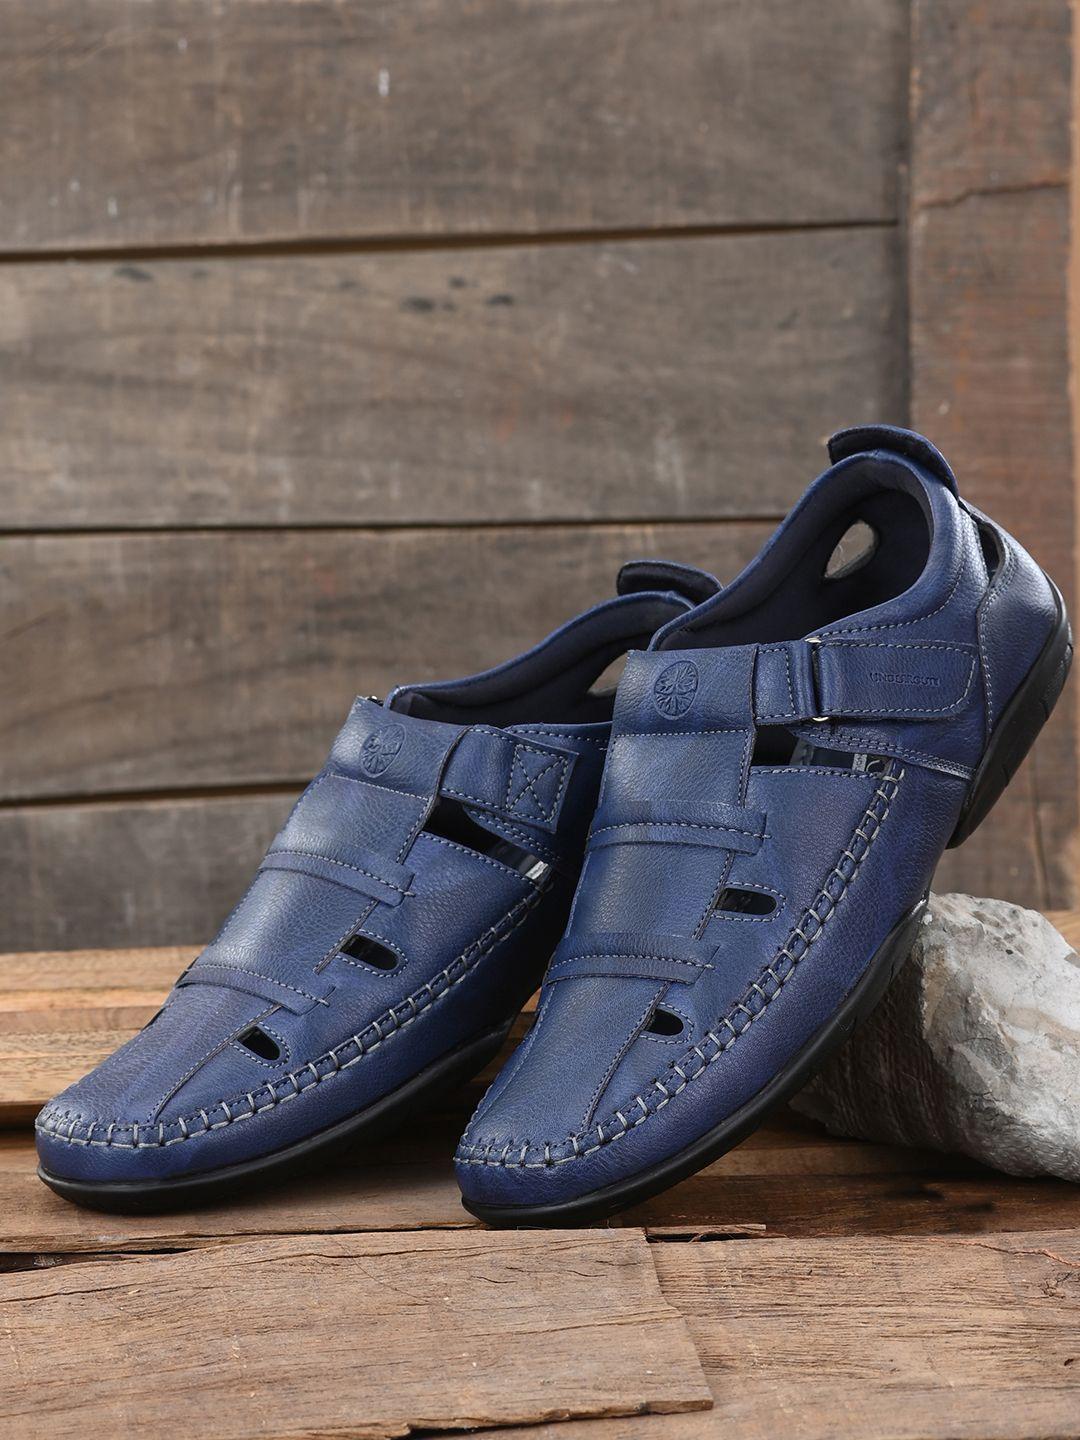 underroute-men-navy-blue-pu-shoe-style-sandals